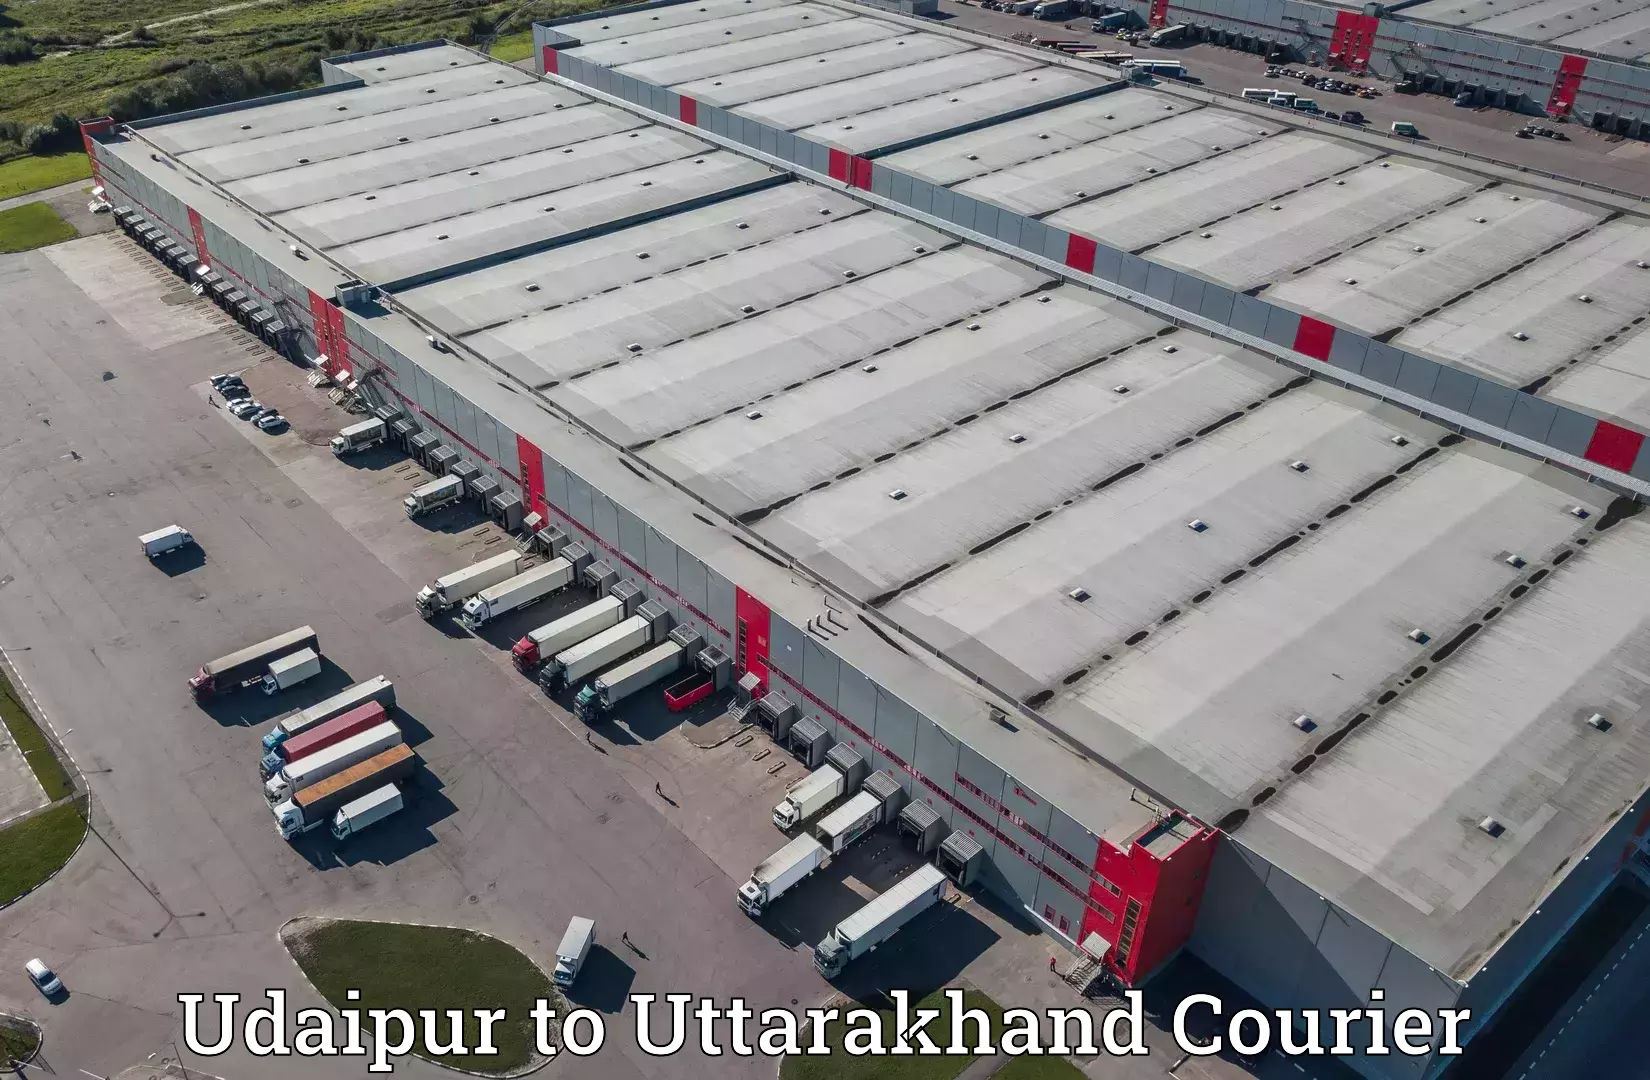 Expedited shipping methods Udaipur to Paithani